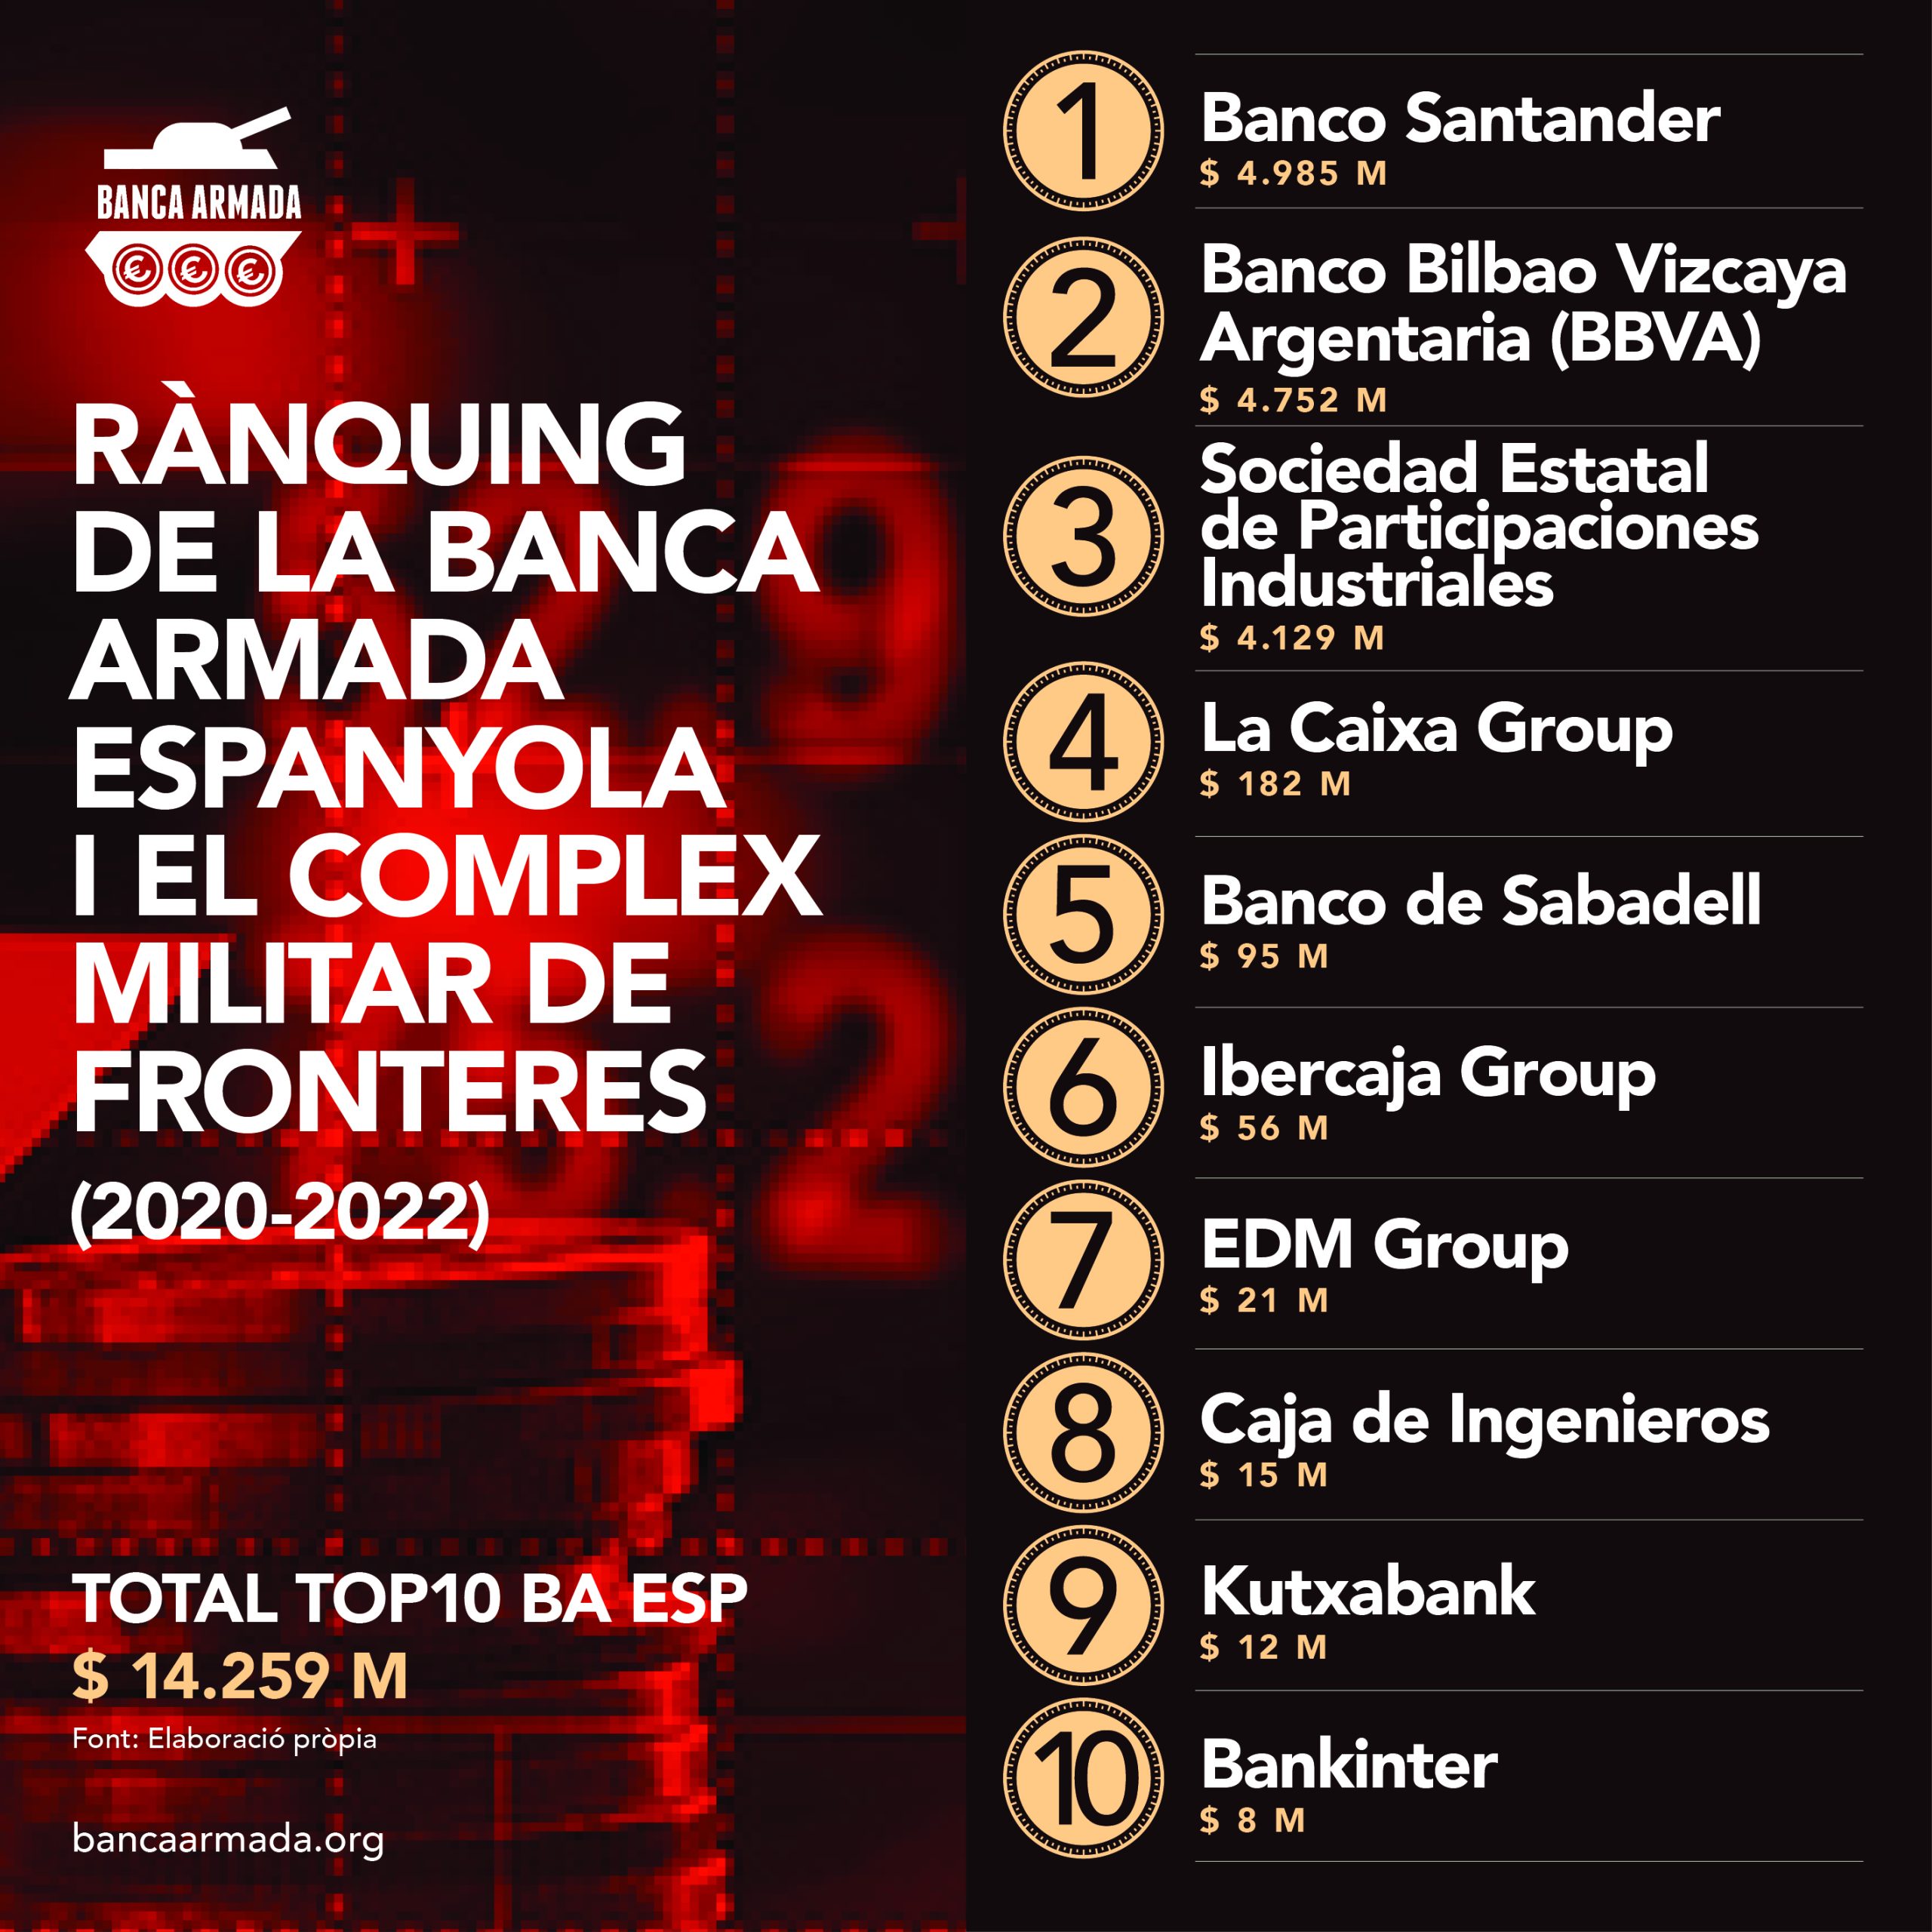 Infografia “Rànquing de la Banca Armada espanyola i el complex militar de fronteres (2020-2022)”